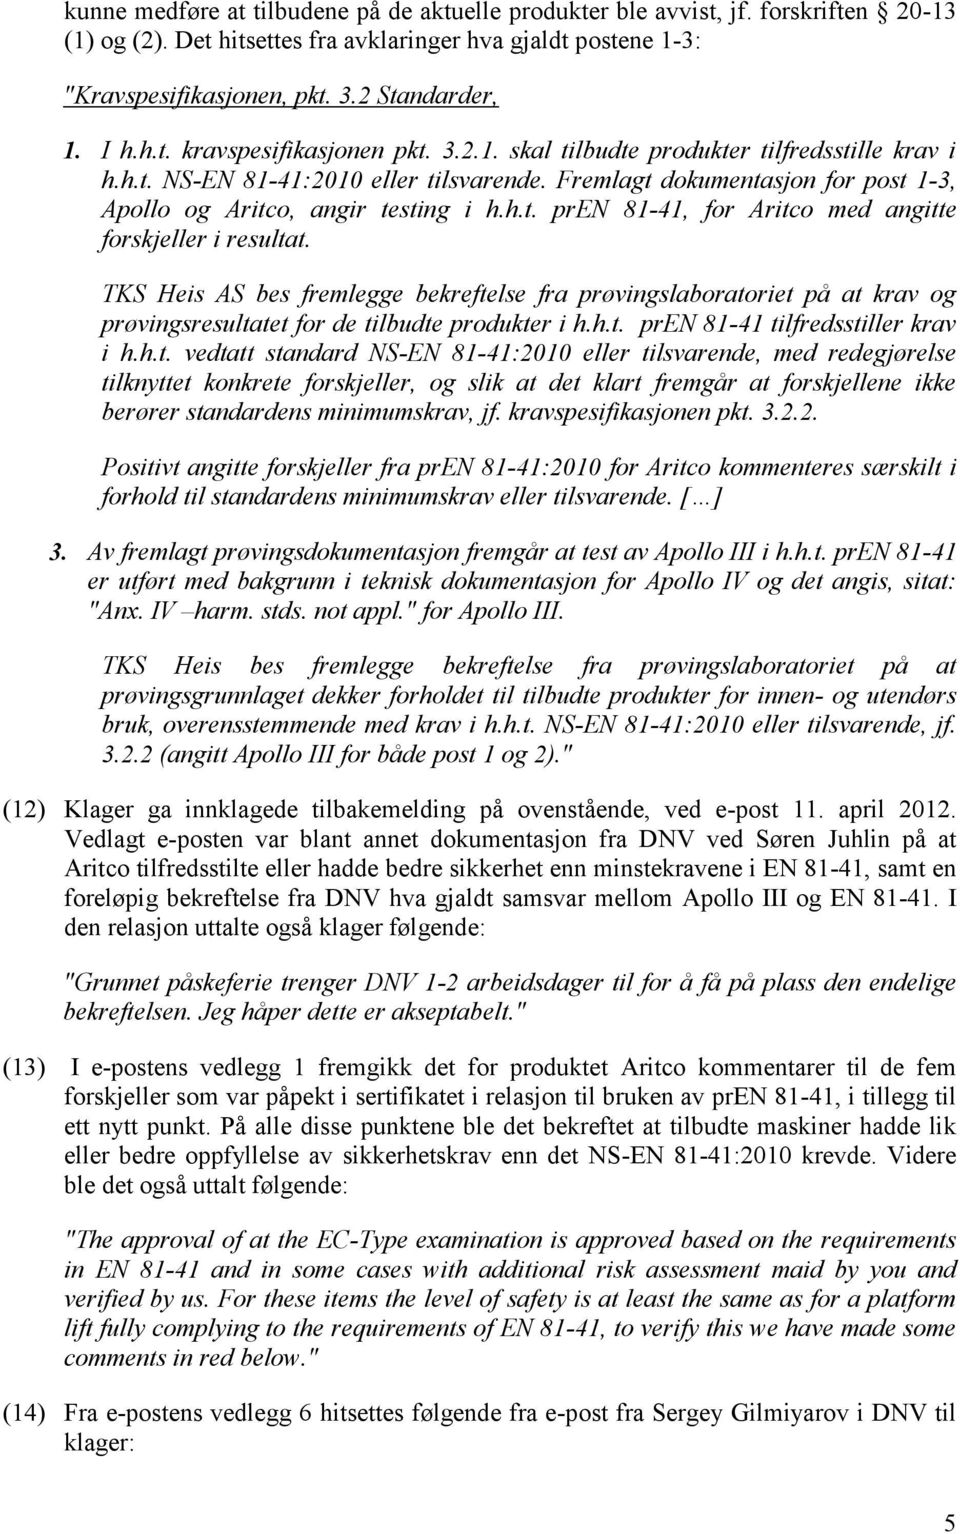 Fremlagt dokumentasjon for post 1-3, Apollo og Aritco, angir testing i h.h.t. pren 81-41, for Aritco med angitte forskjeller i resultat.